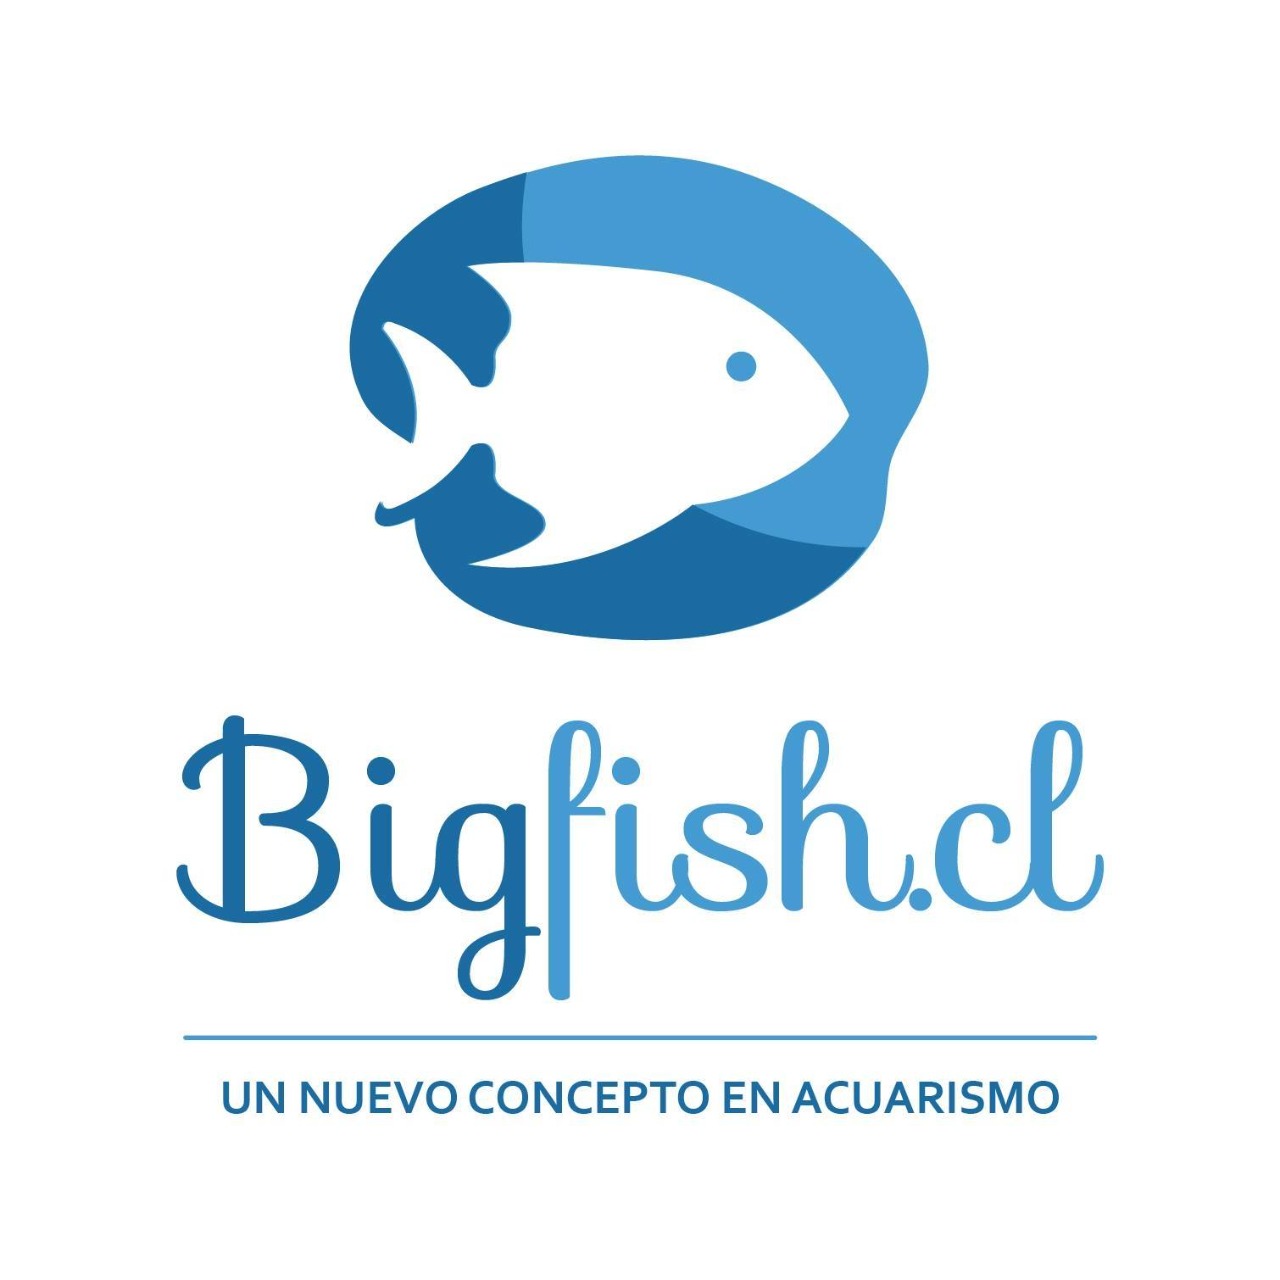 bigfish.cl